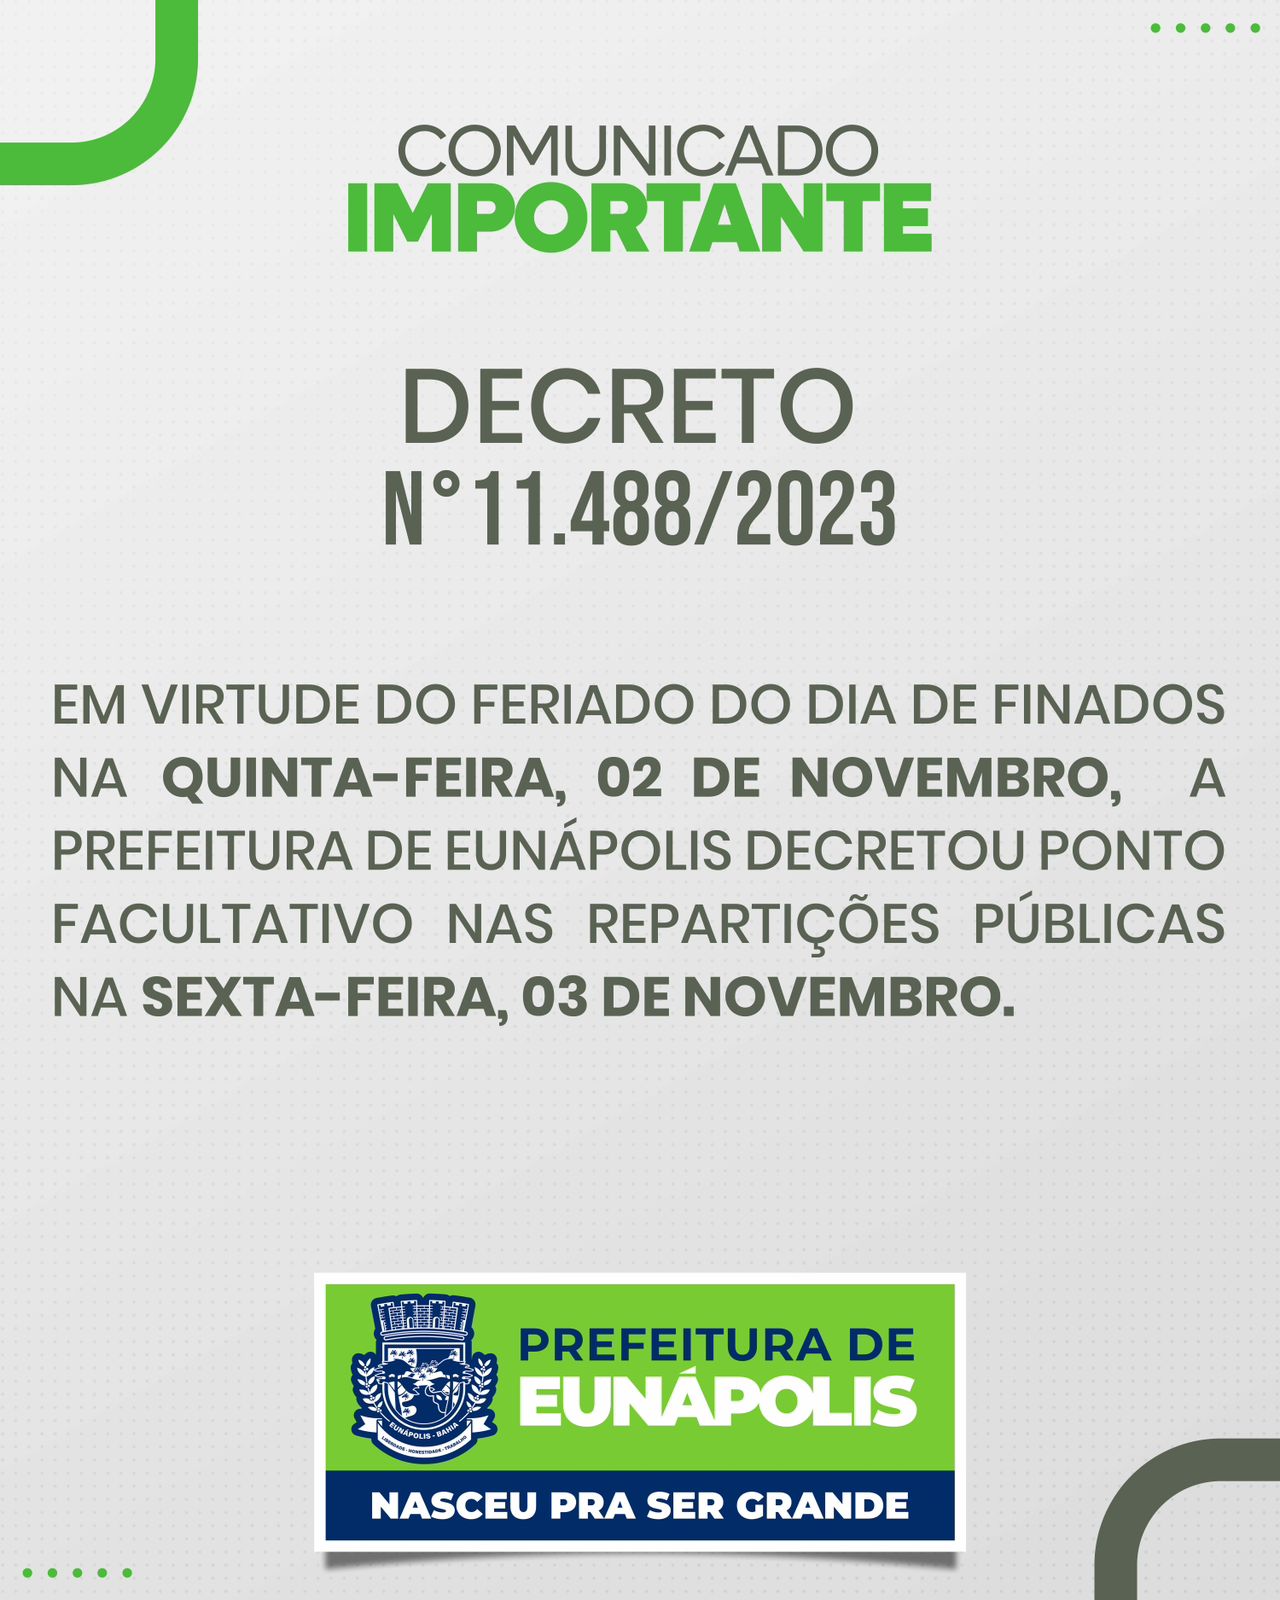 Decreto estabelece ponto facultativo nas repartições públicas no dia 03 de novembro em razão do Dia de Finados 5